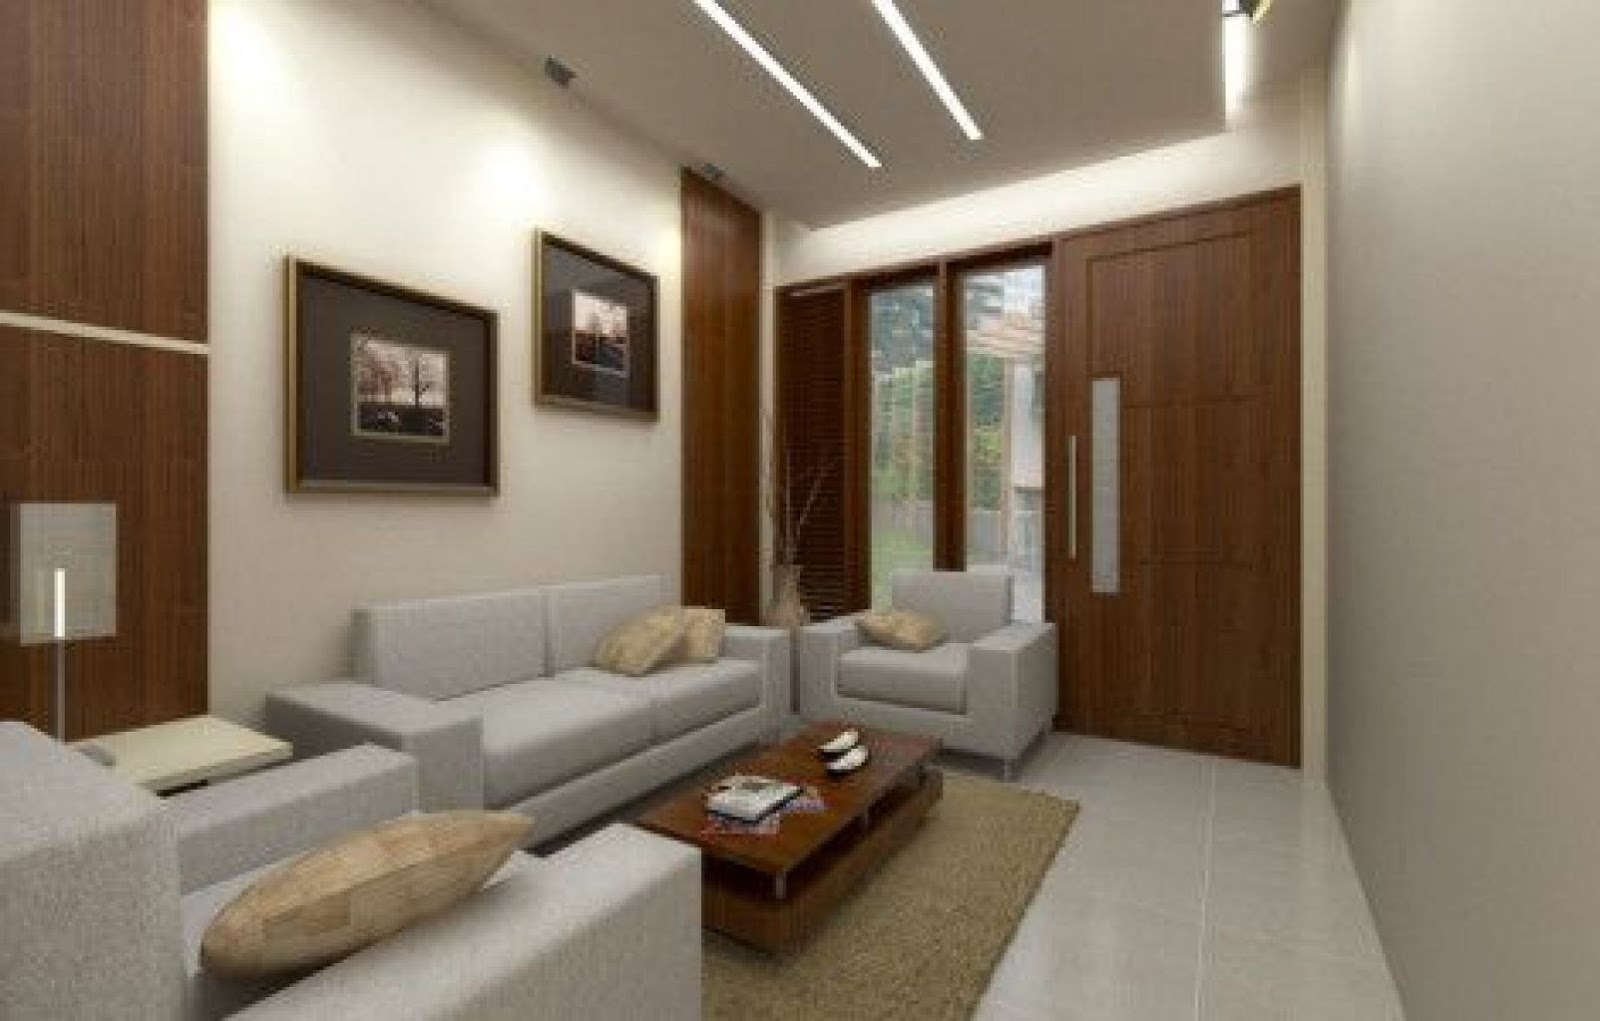 Desain Interior Ruang Tamu Terbaru 2019 Rumah Minimalis Type 36 Yang ...